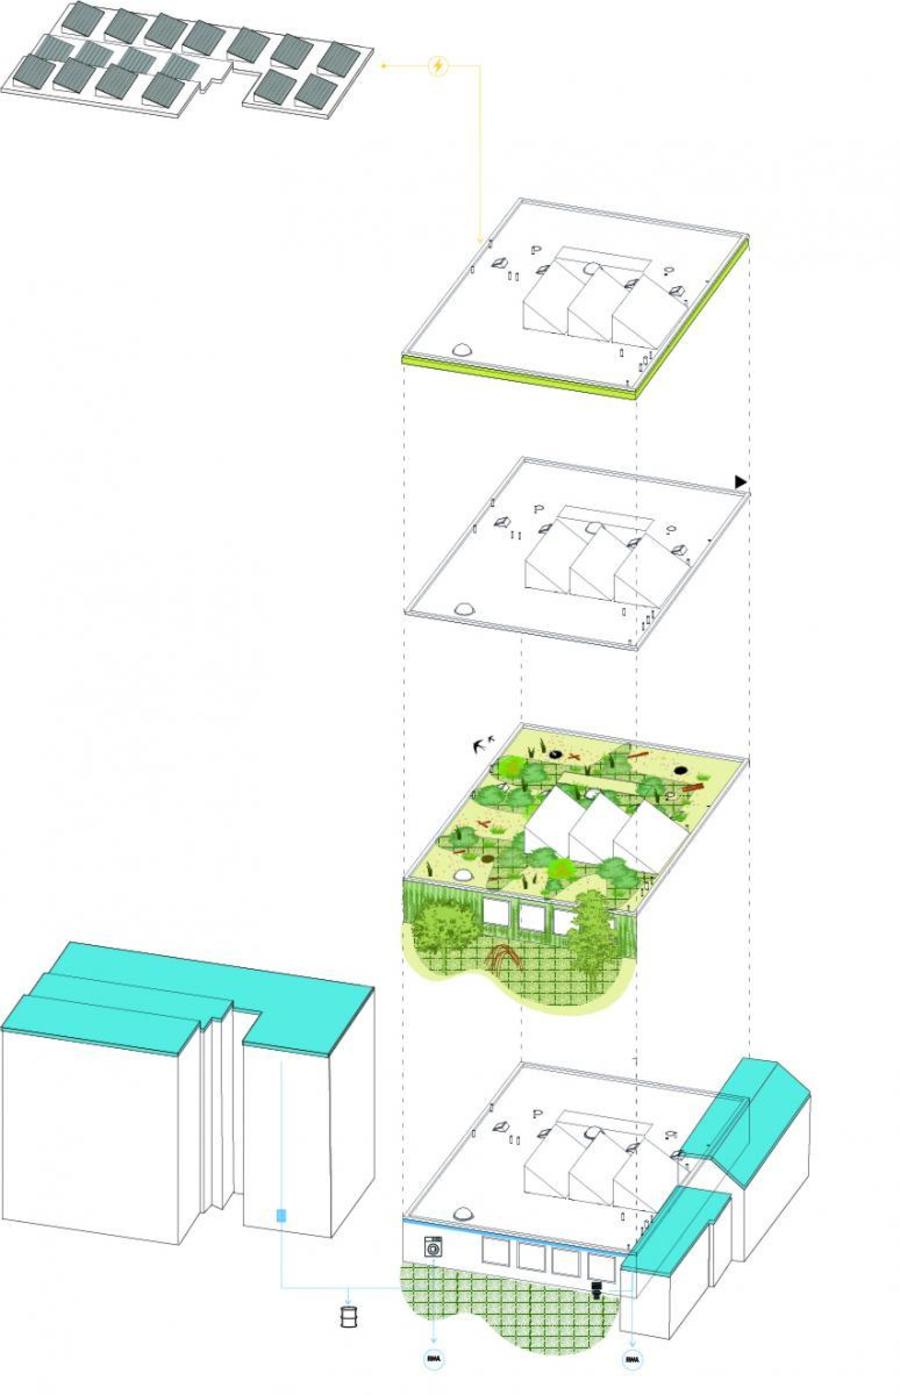 De schets van architectenbureau Stramien voor het dakproject Elief combineert de elementen Energie, Gebruik en Natuur met Water, dat ook van de buurdaken komt.